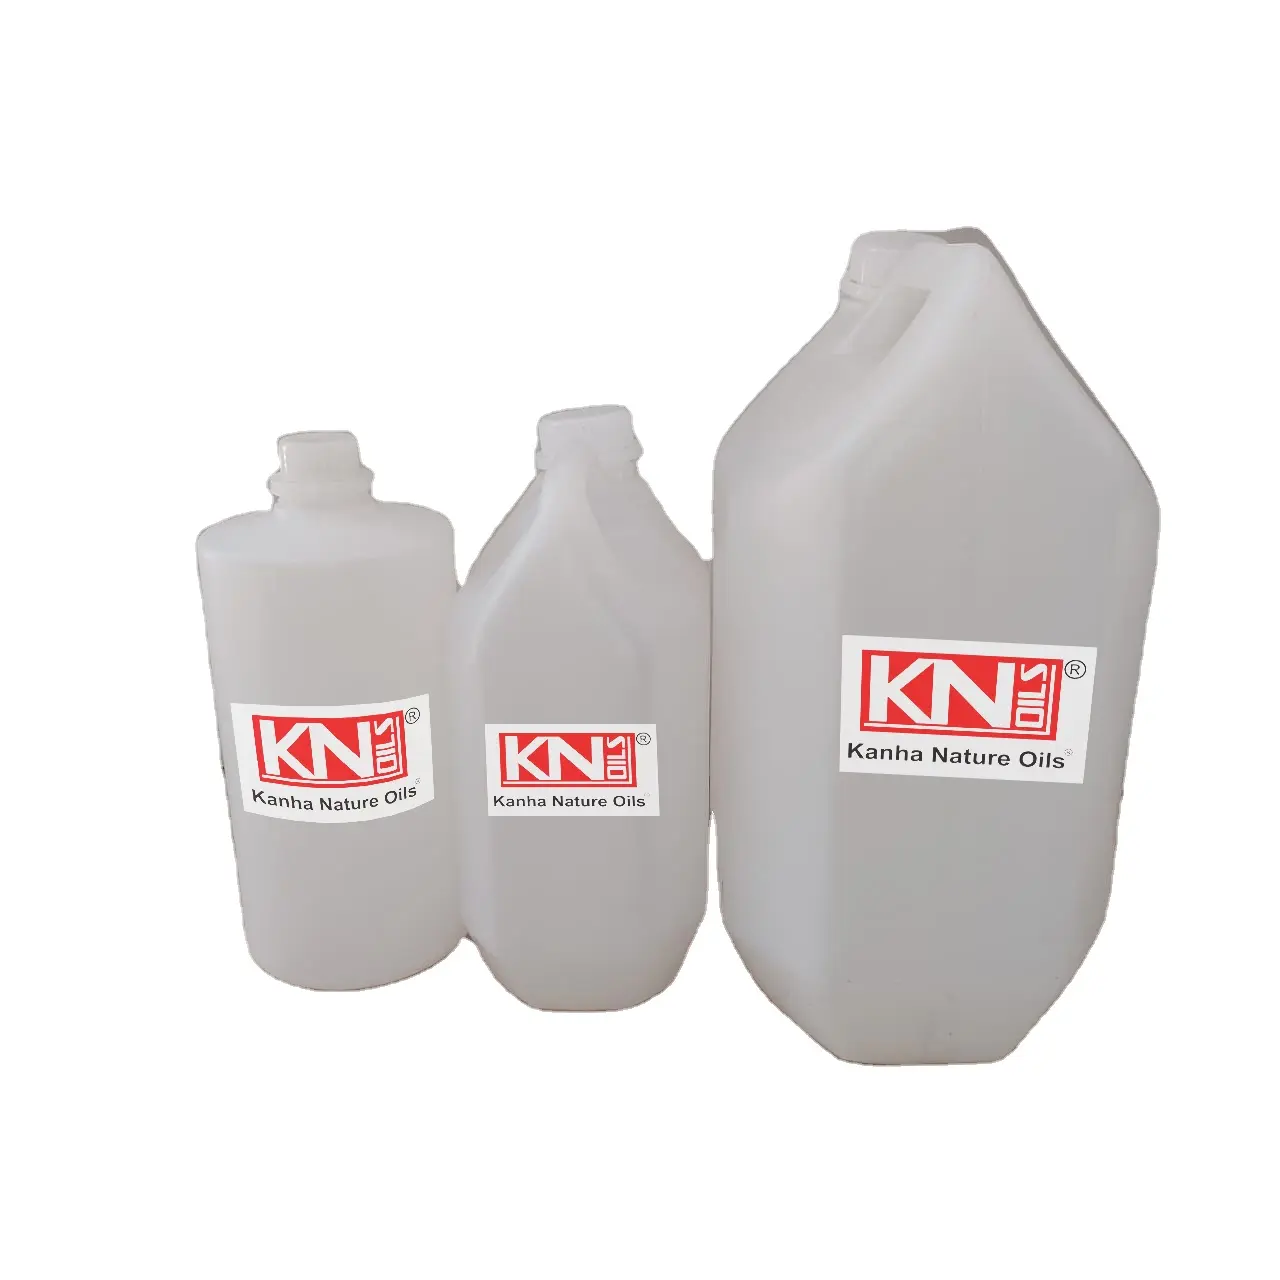 アマランスエッセンシャルオイルメーカーKANHA NATURE OILSインドプレミアム品質卸売価格バルクを購入